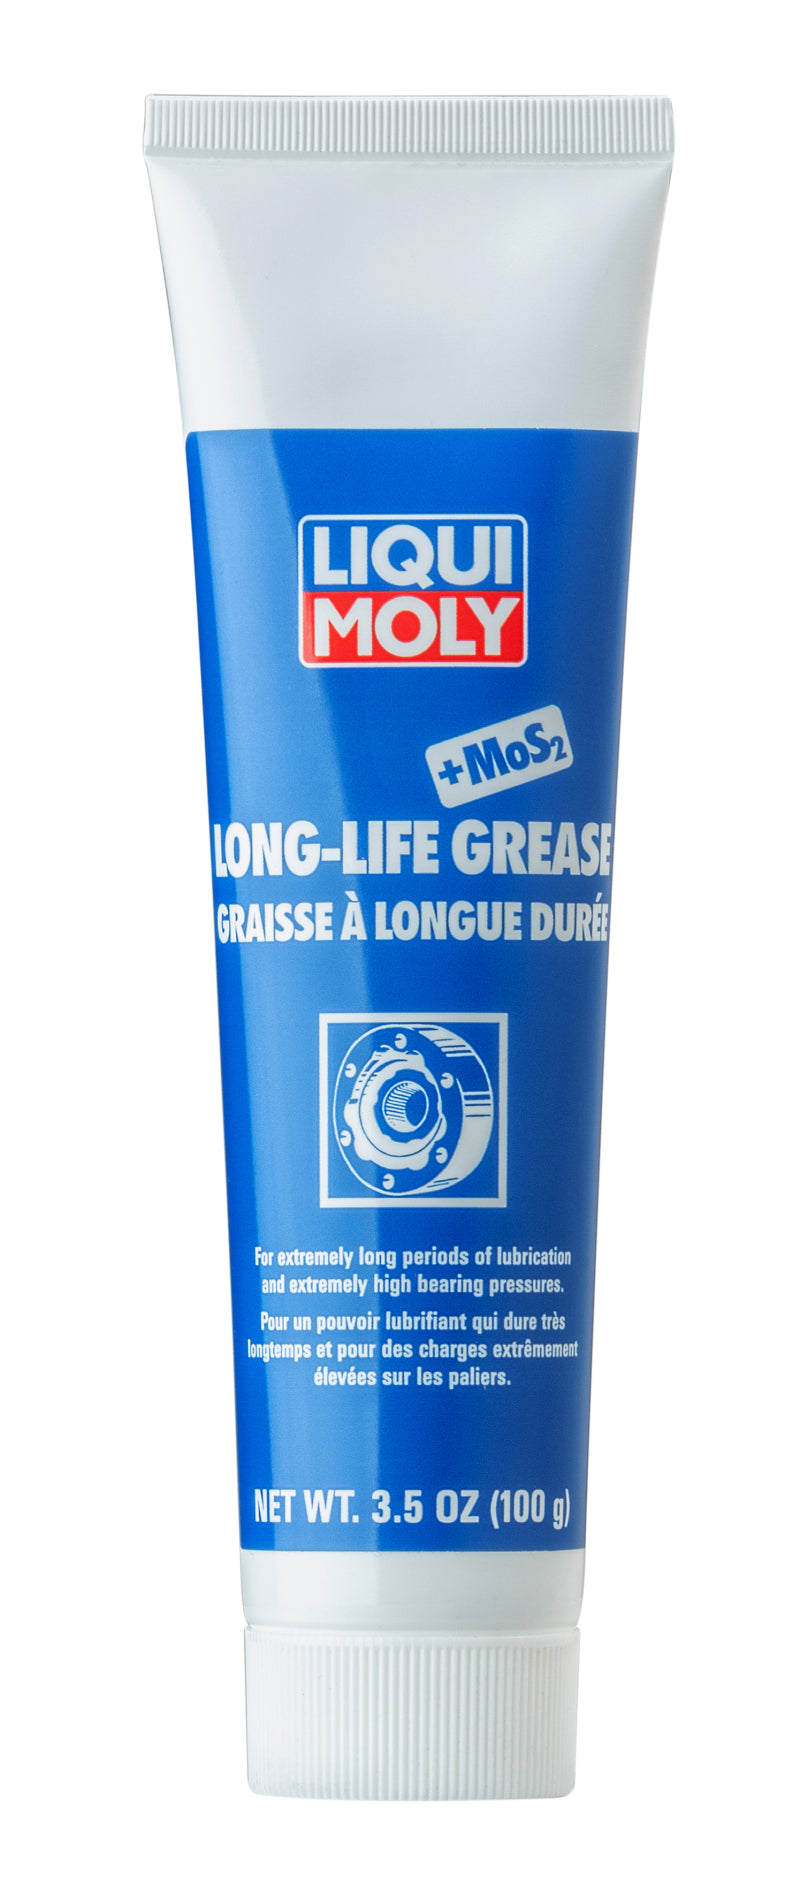 LIQUI MOLY 100g Long-Life Grease + MoS2.